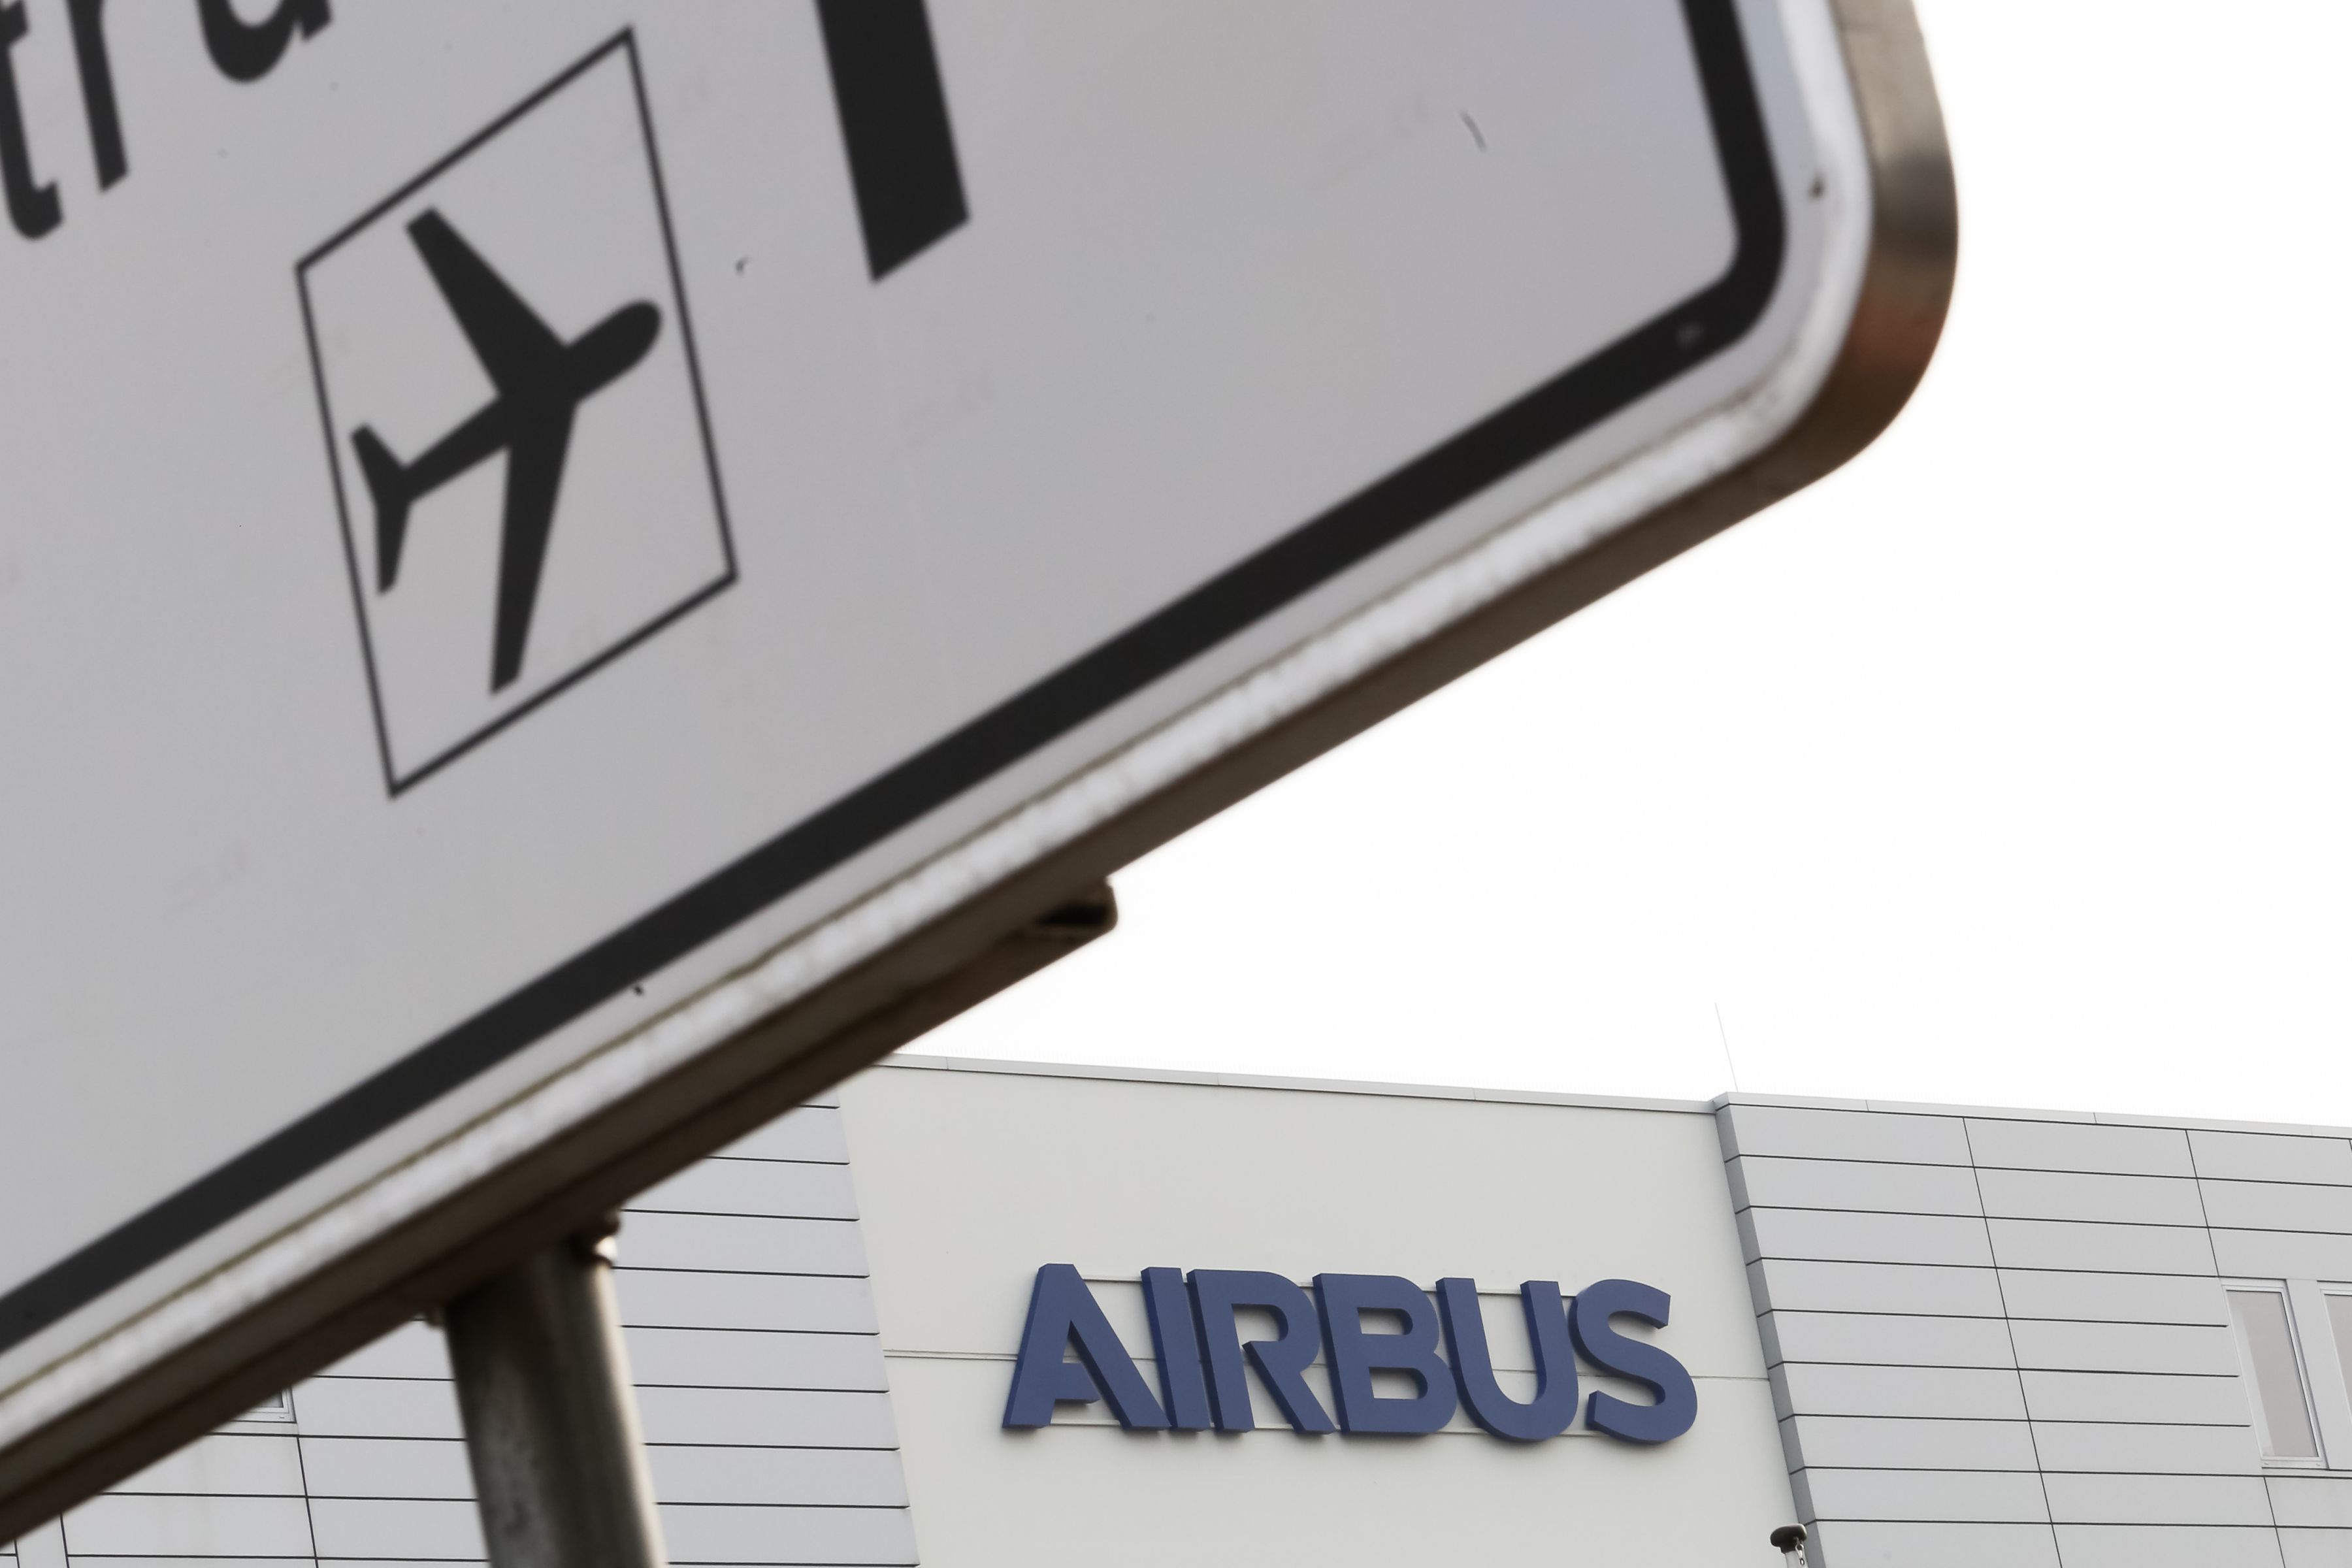 Acţiunile Atos se prăbuşesc cu 18%, în condiţiile în care Airbus încheie discuţiile pentru cumpărarea unităţii de big data